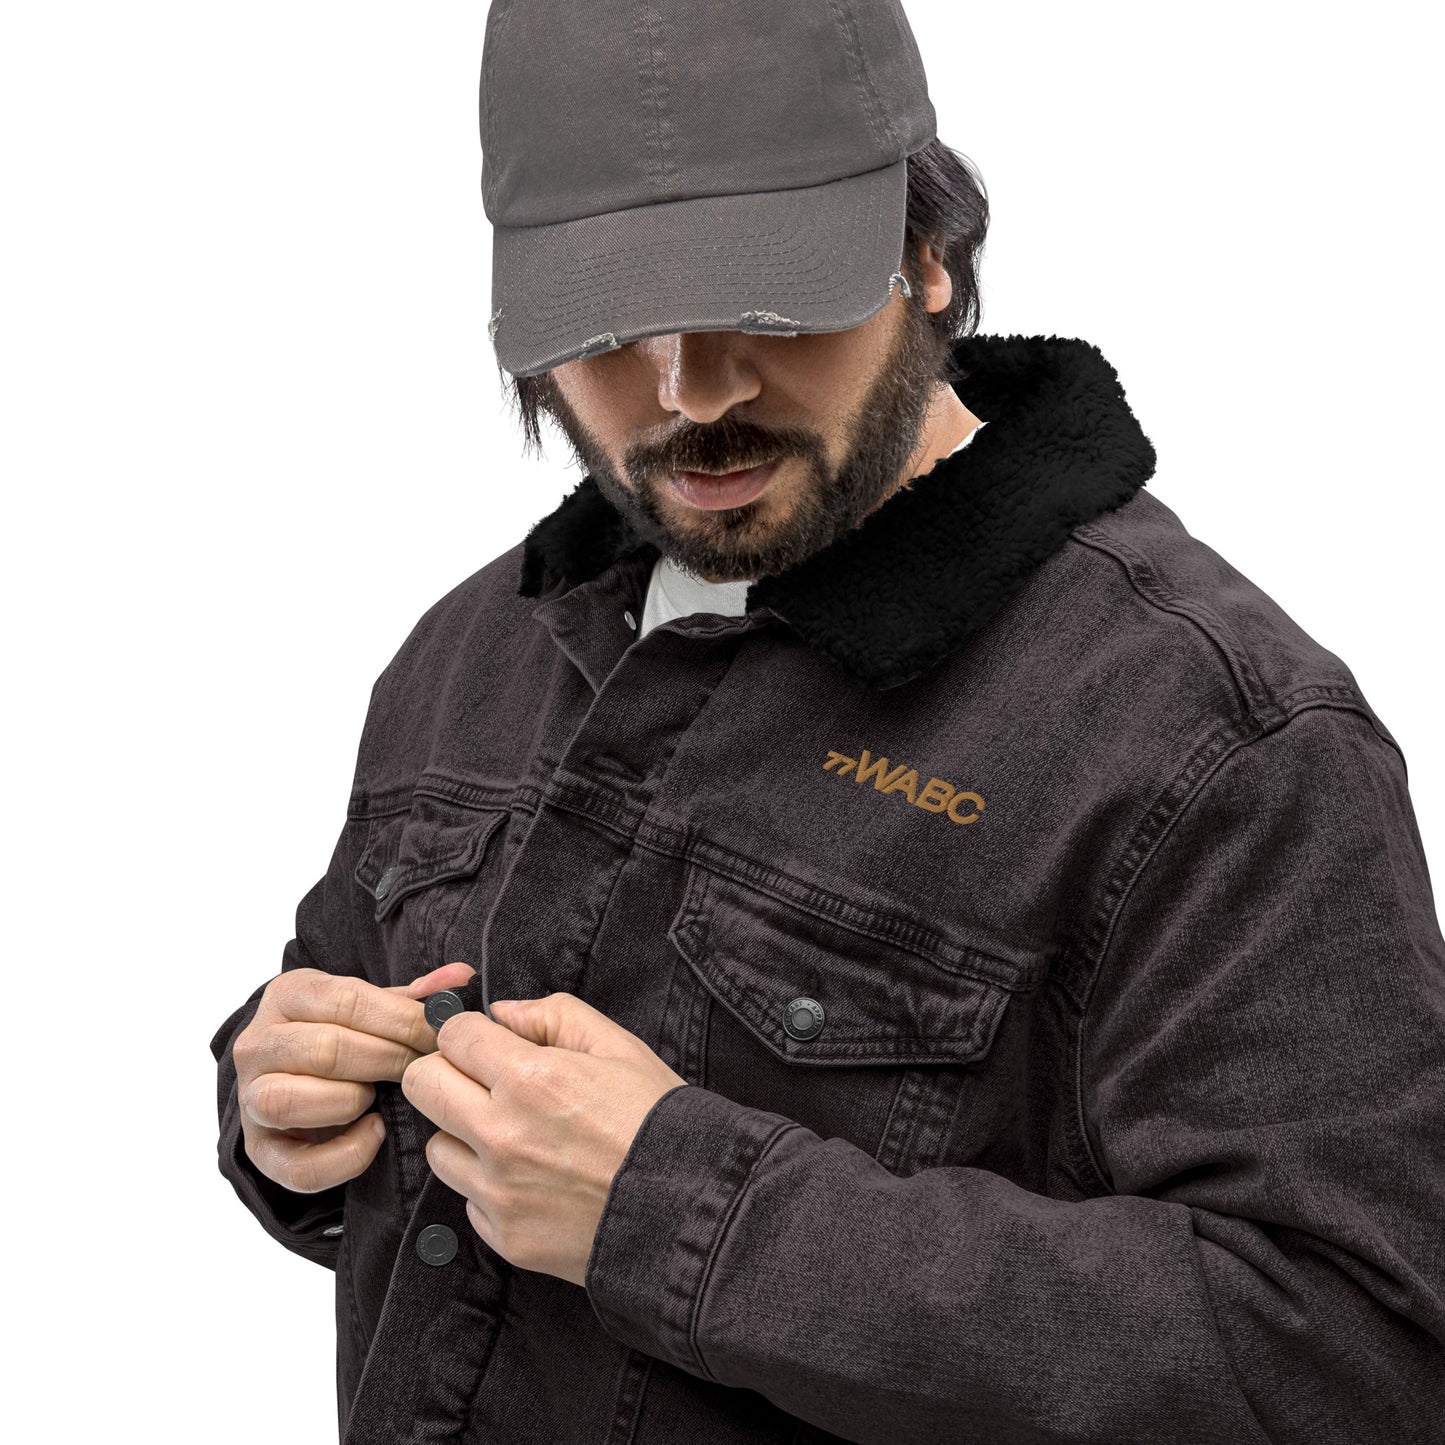 77WABC Embroidered Unisex denim sherpa jacket